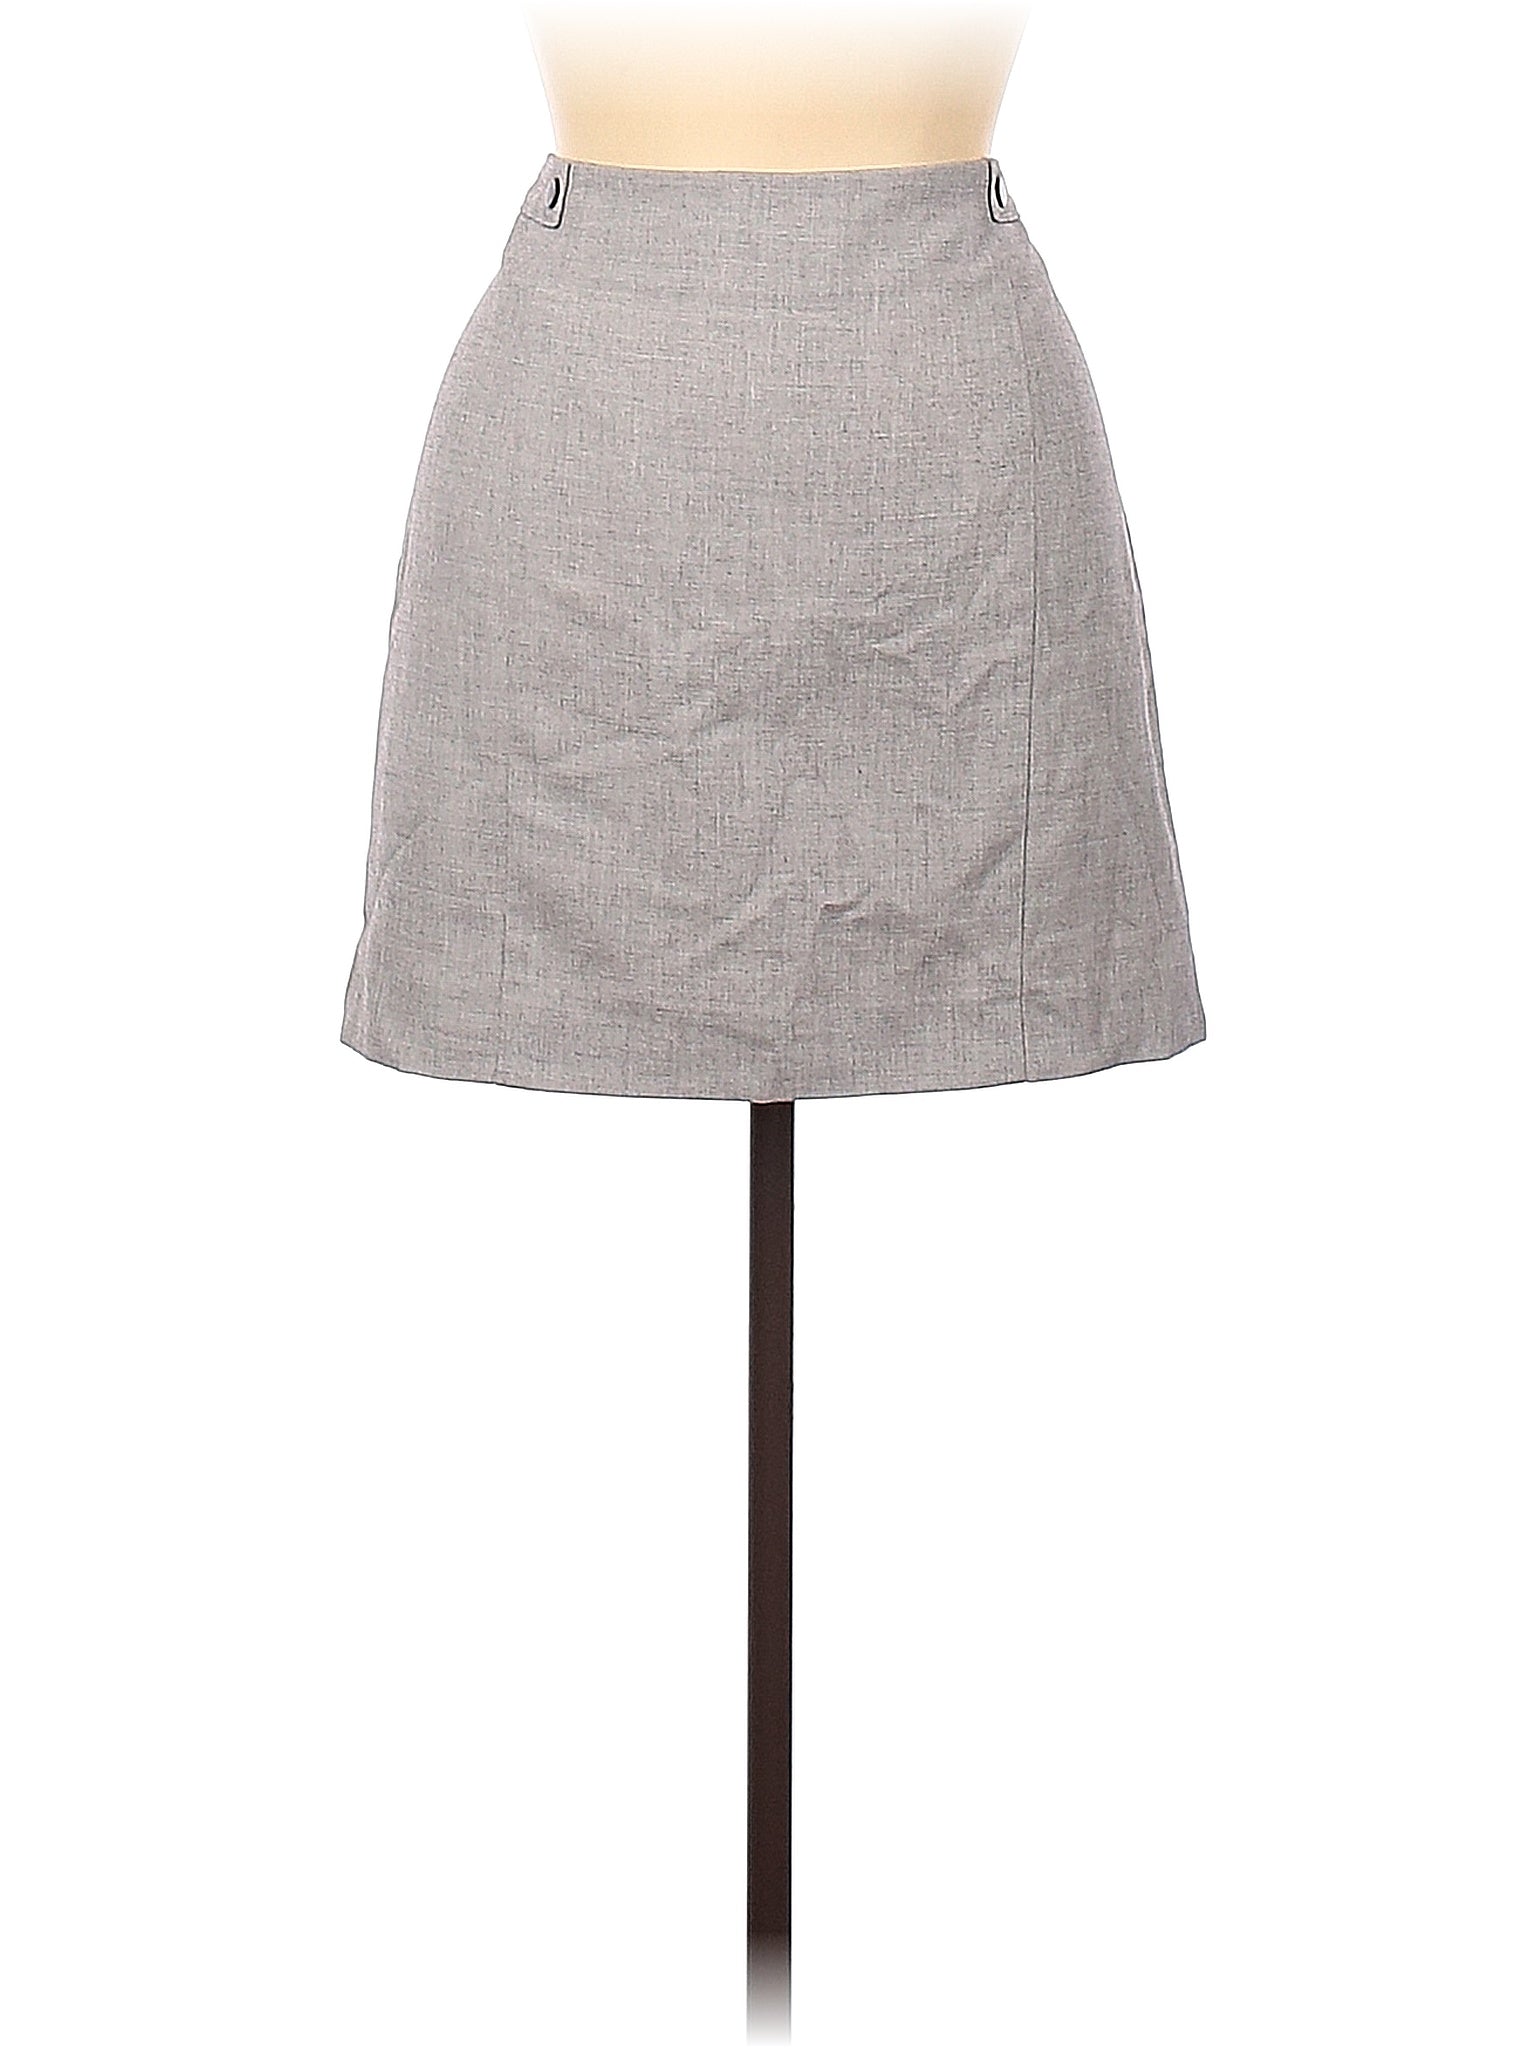 Formal Skirt size - 8